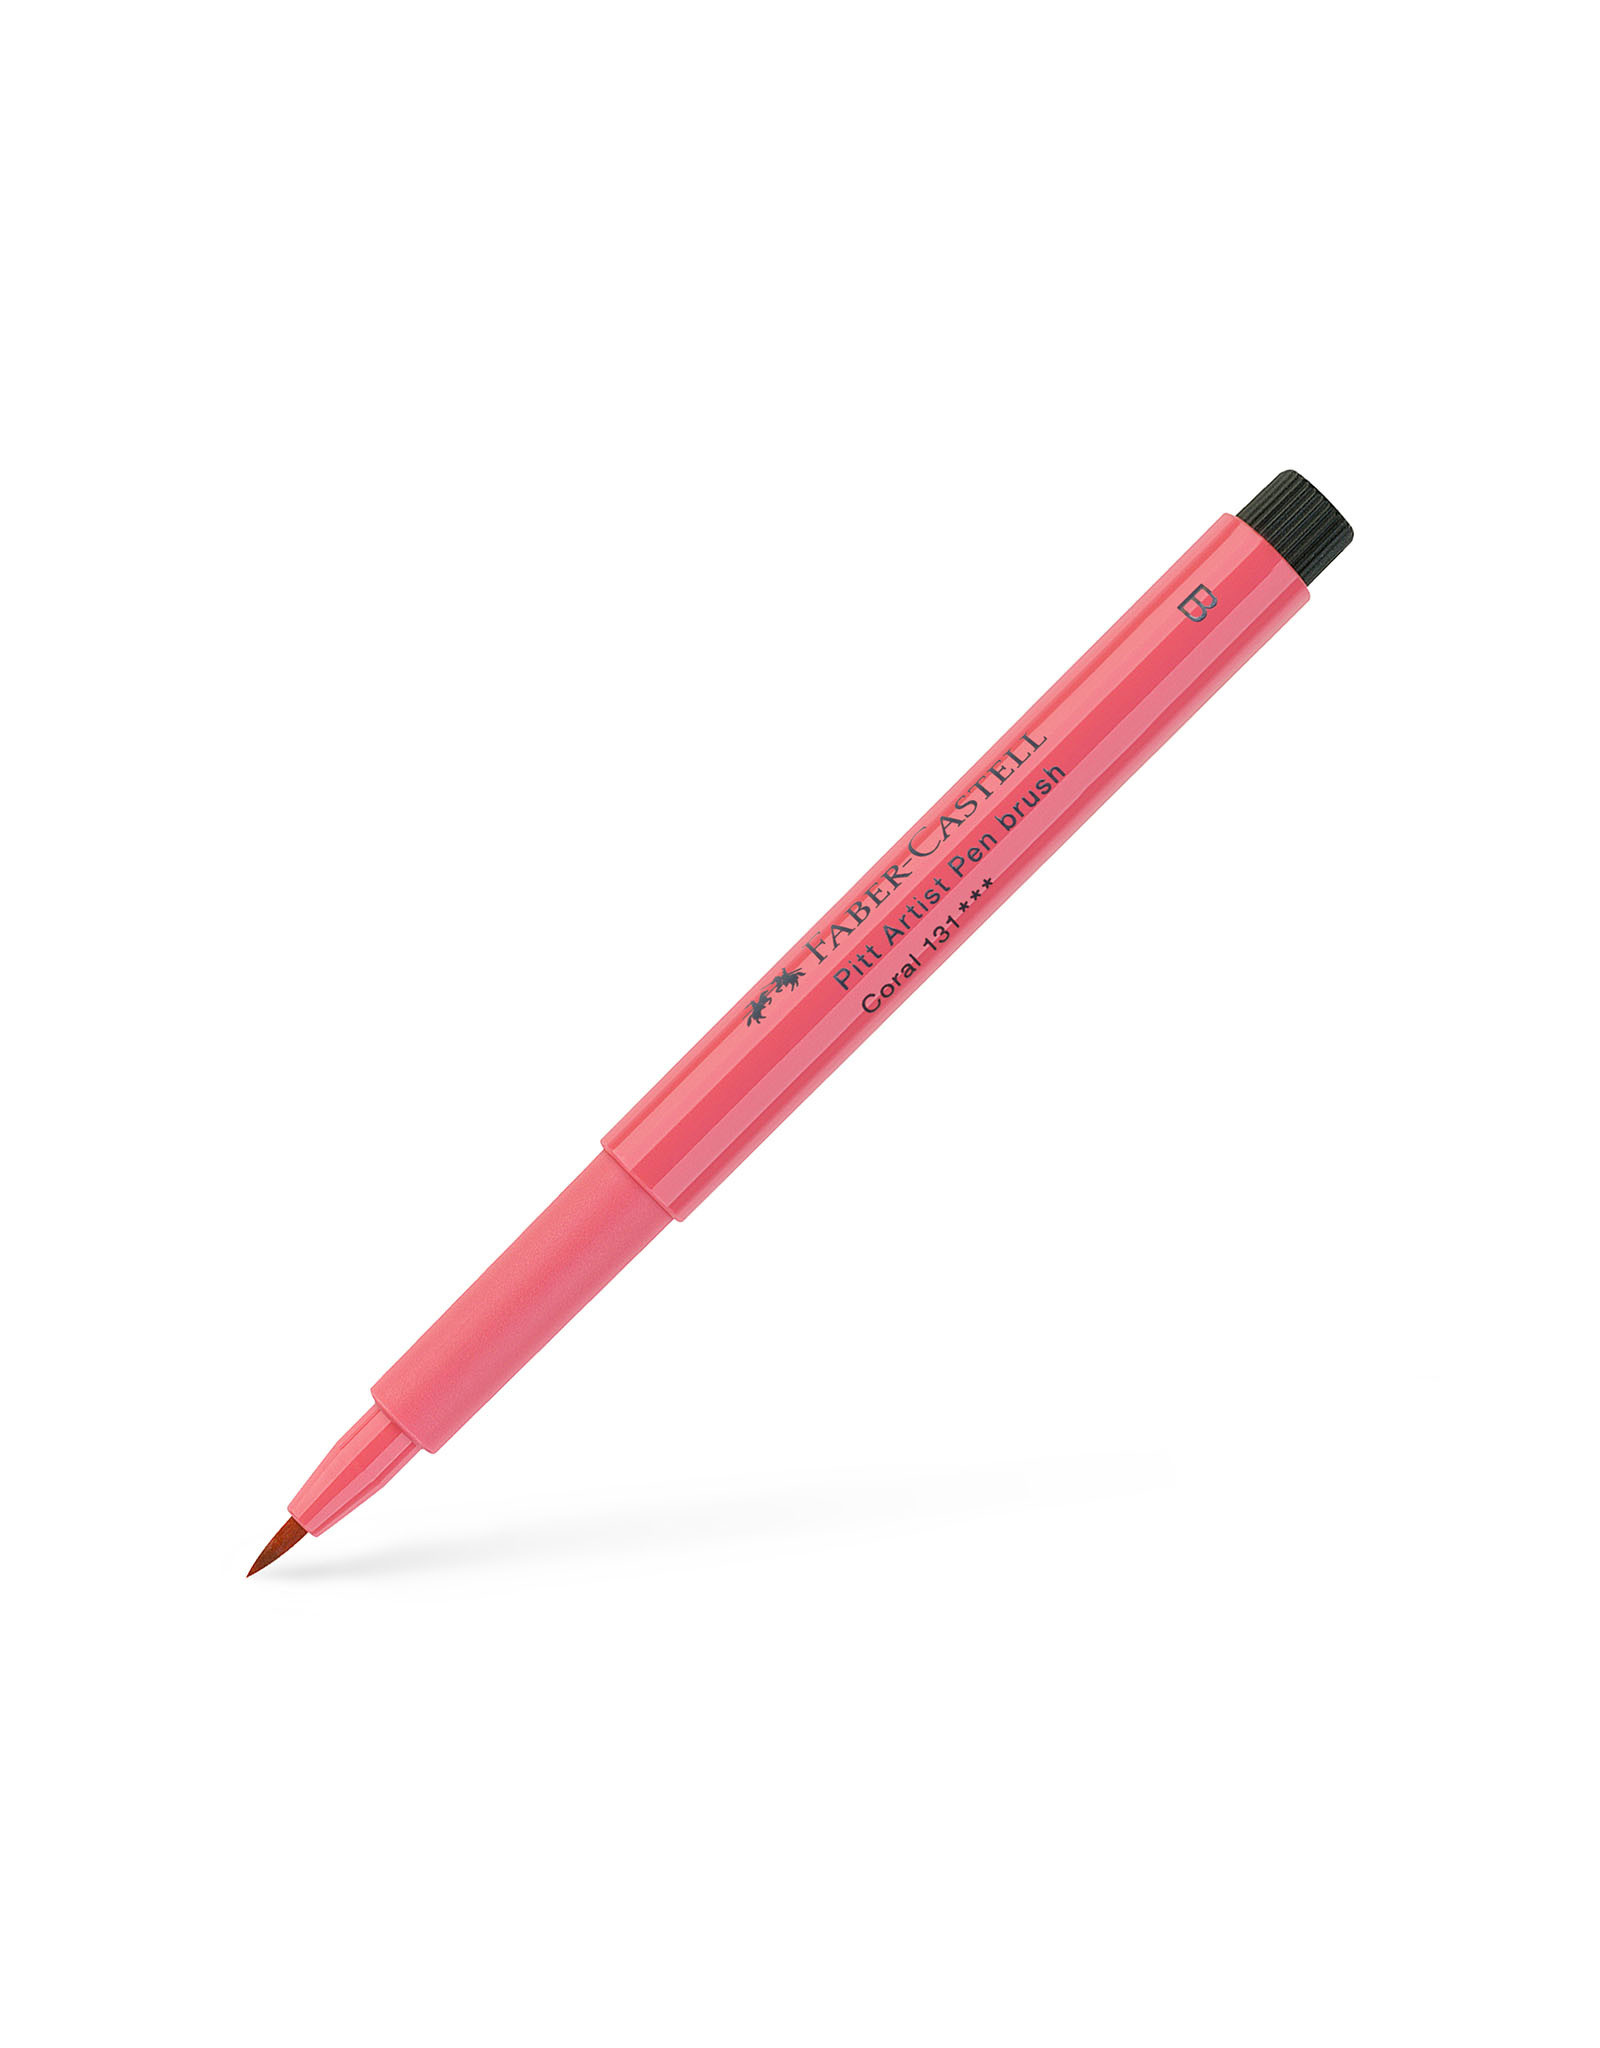 FABER-CASTELL Pitt Artist Pen, Brush, Coral